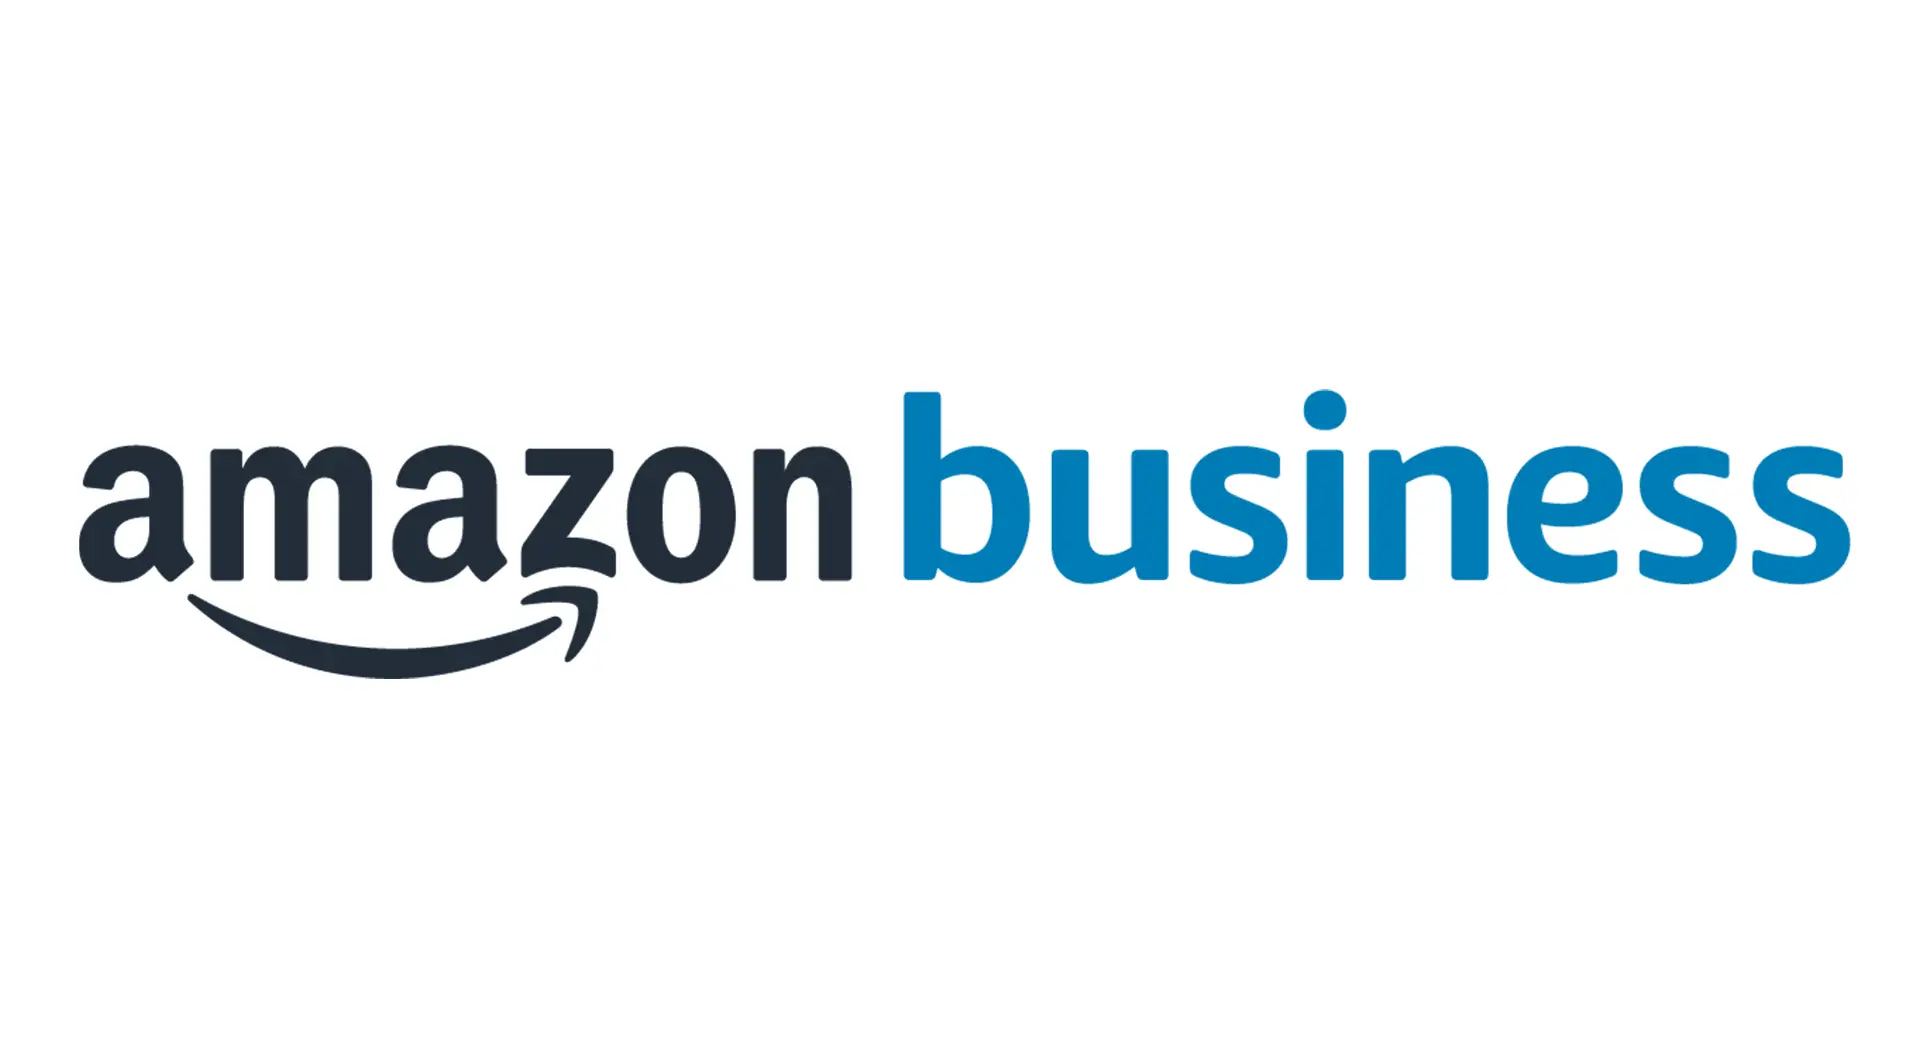 Amazon Business Analyst Interview Reddit